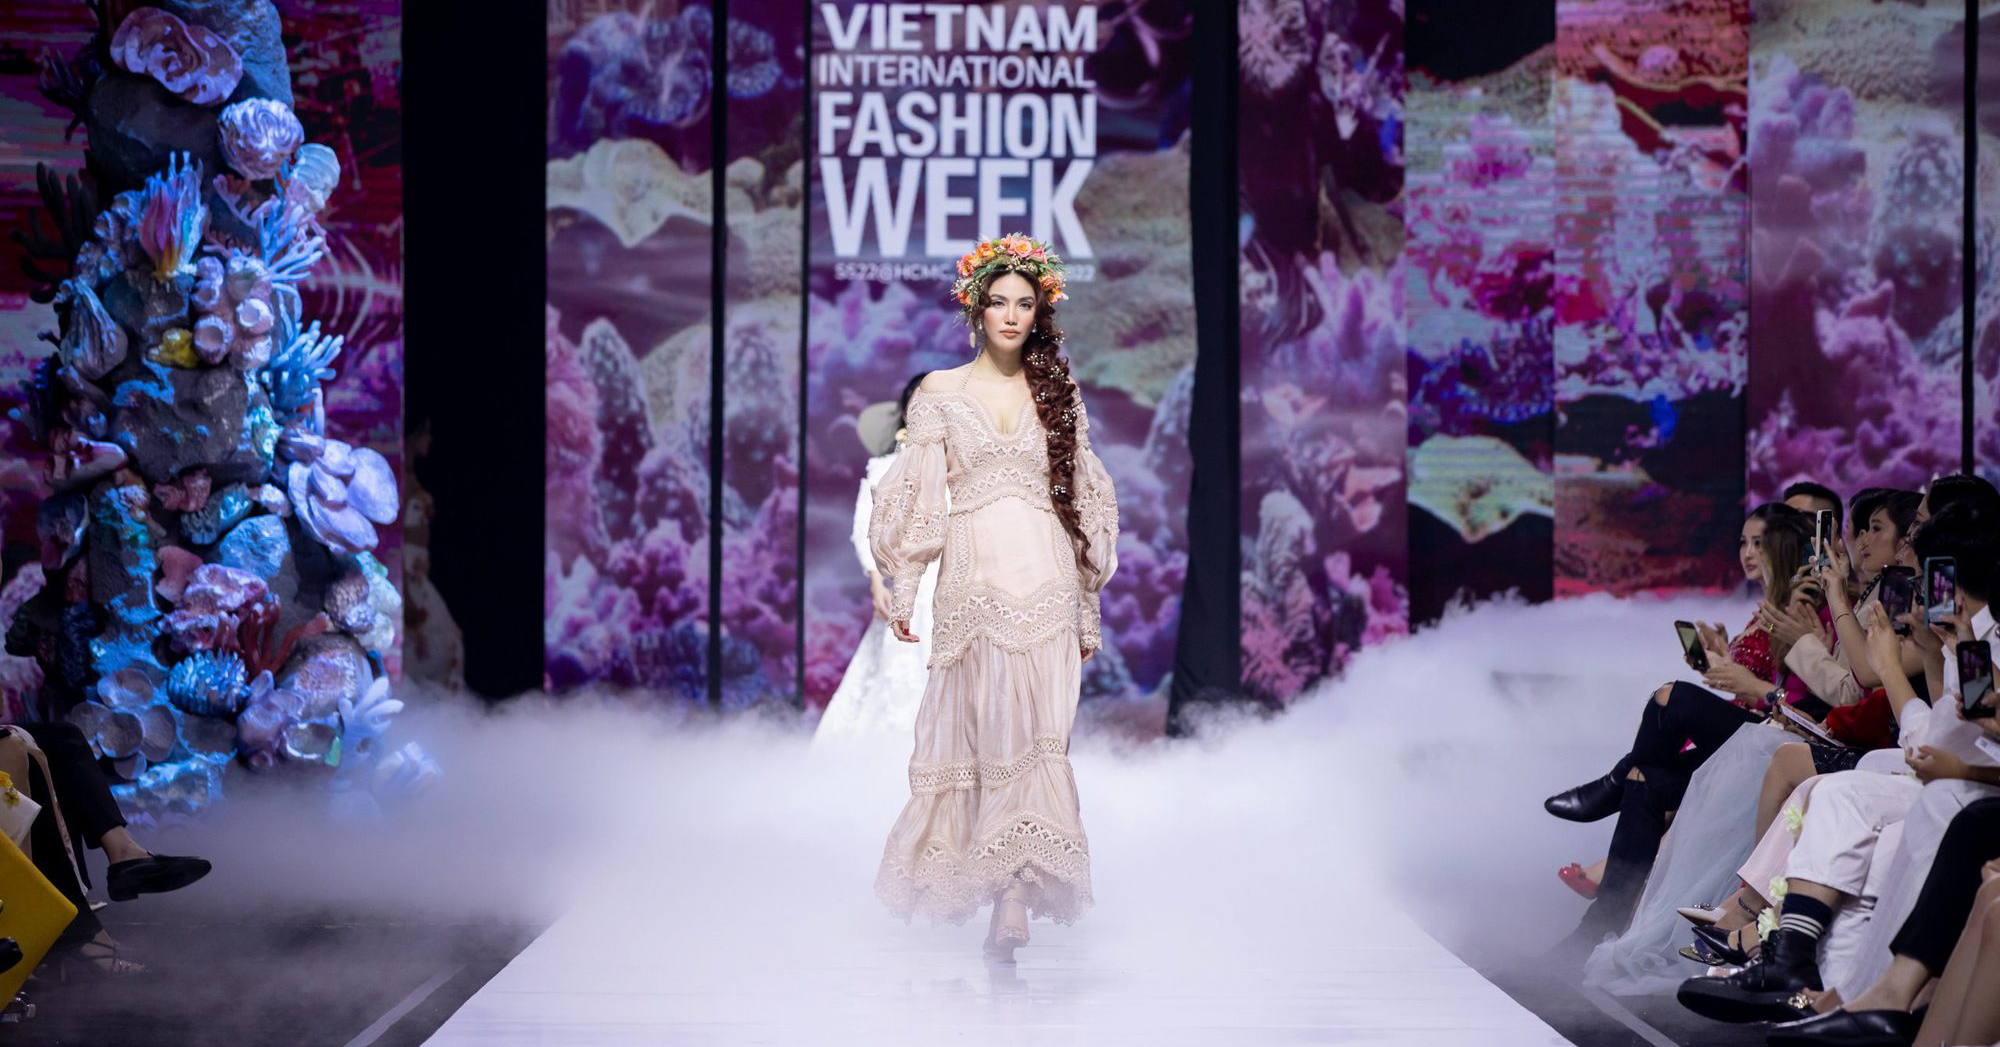 Cơn lũ TikToker đã nhấn chìm Tuần lễ thời trang quốc tế Việt Nam (VIFW)? - Ảnh 13.